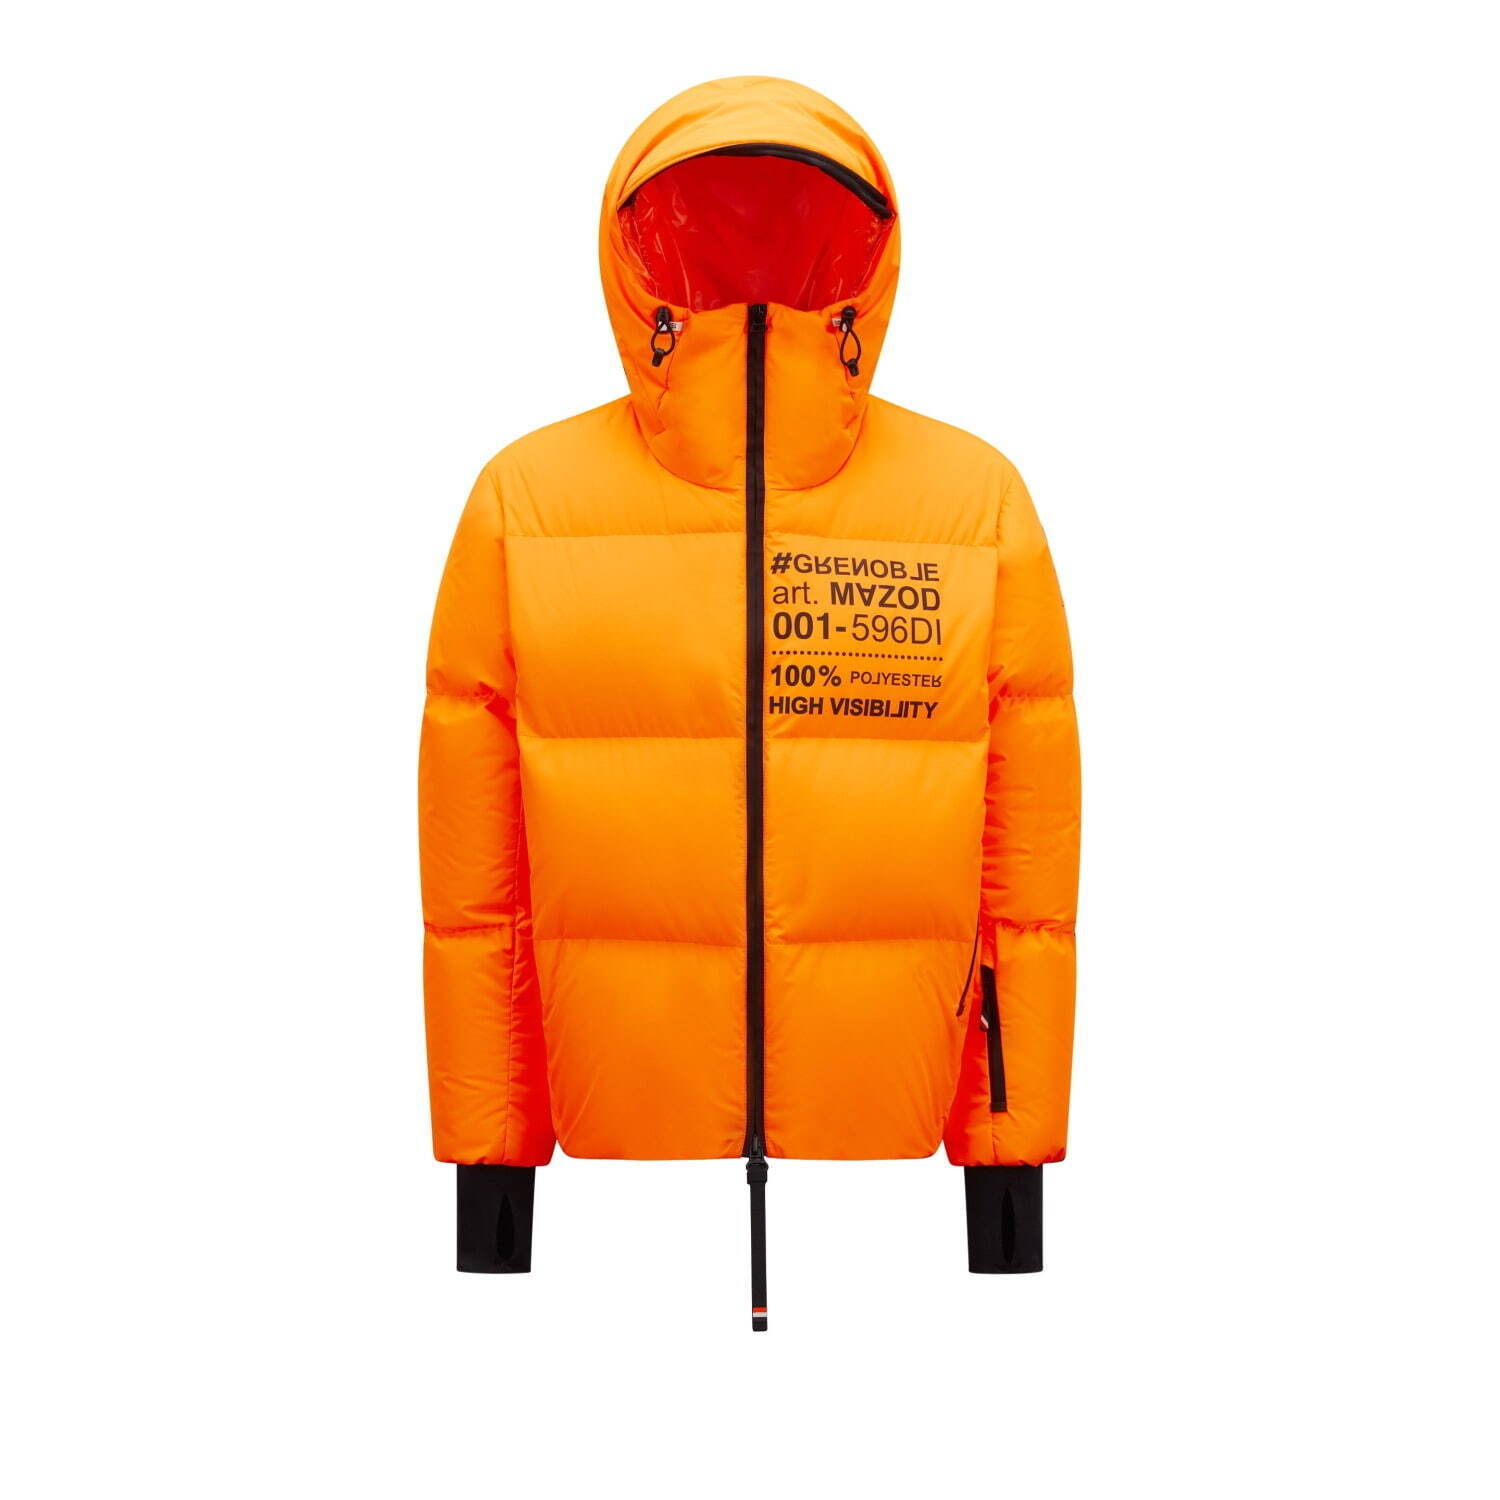 モンクレール グルノーブルの高機能スキーウェア、鮮やか“蛍光オレンジ